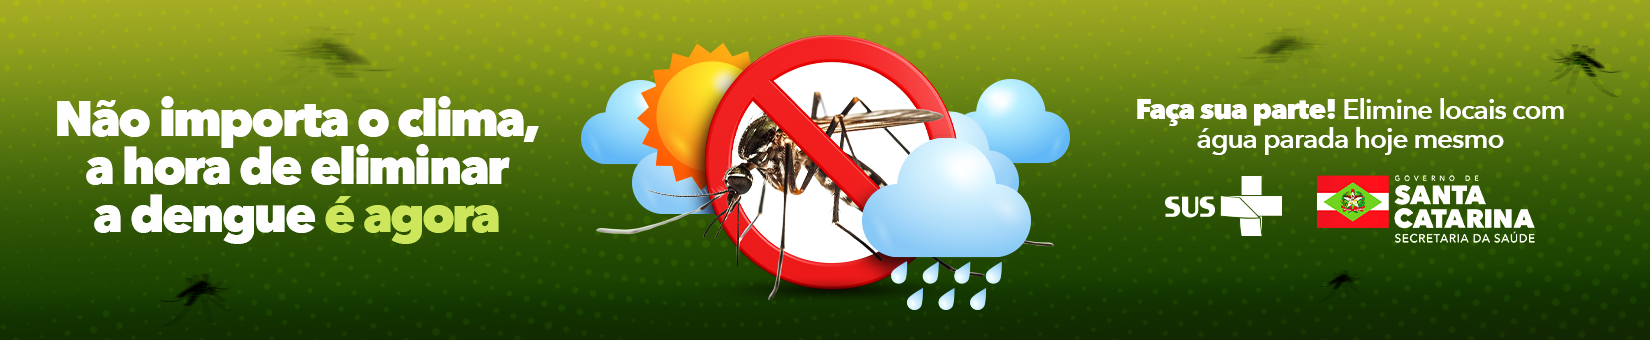 dia_d_contra_dengue_banner_site_no_importa_o_clima_a_hora_de_eliminar_a_dengue__agora